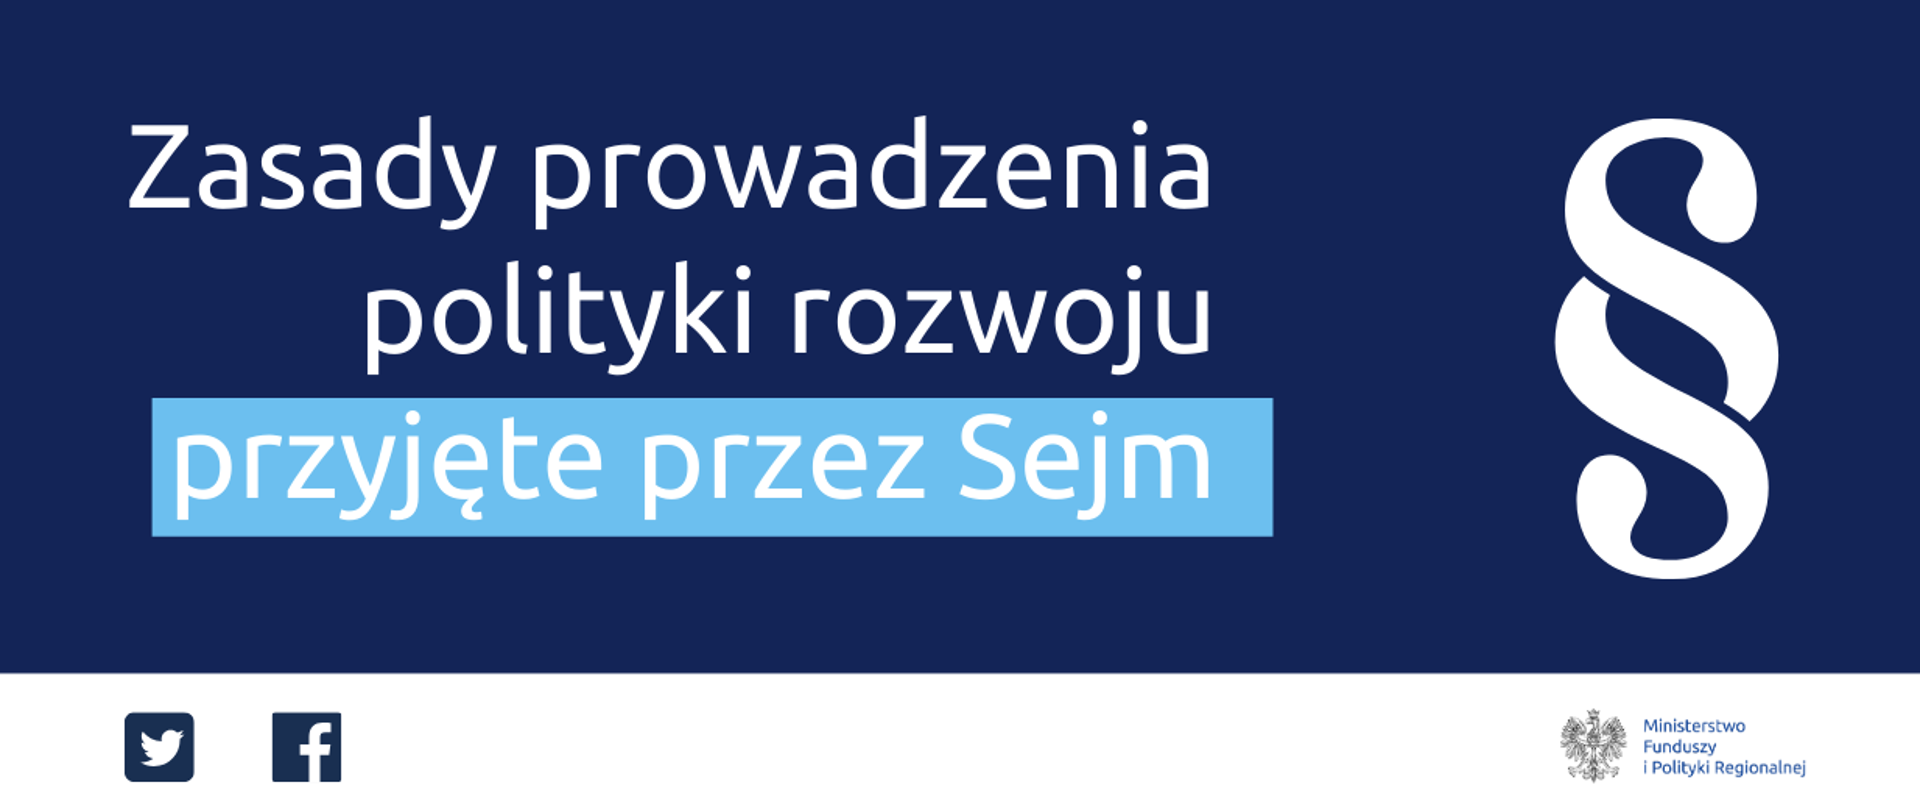 Na granatowym tle napis - Zasady prowadzenia polityki rozwoju przyjęte przez Sejm. Obok biały paragraf.